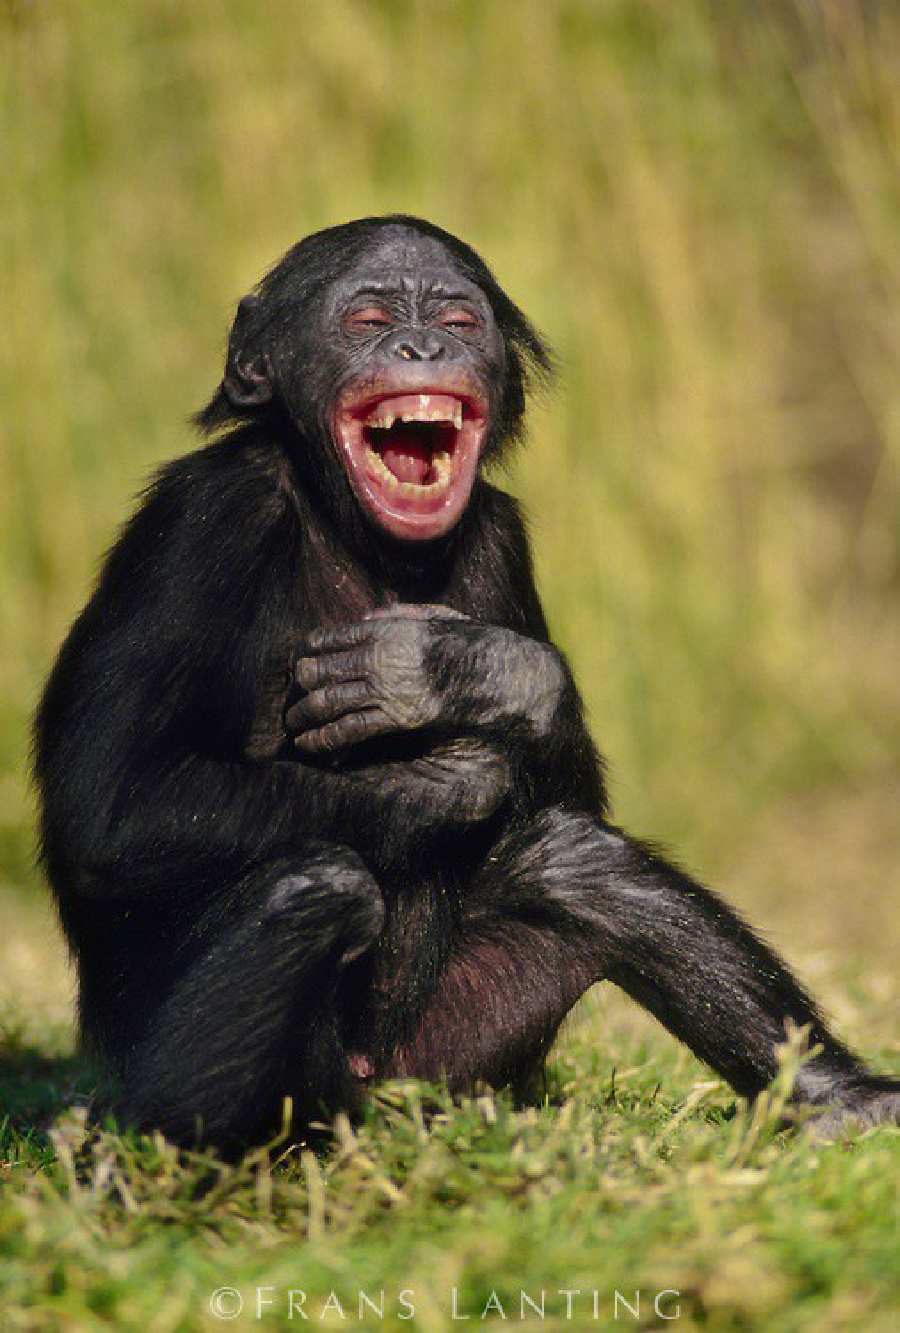 Tertawa terbahak-bahak!  10 Foto Monyet Candid dengan Berbagai Ekspresi